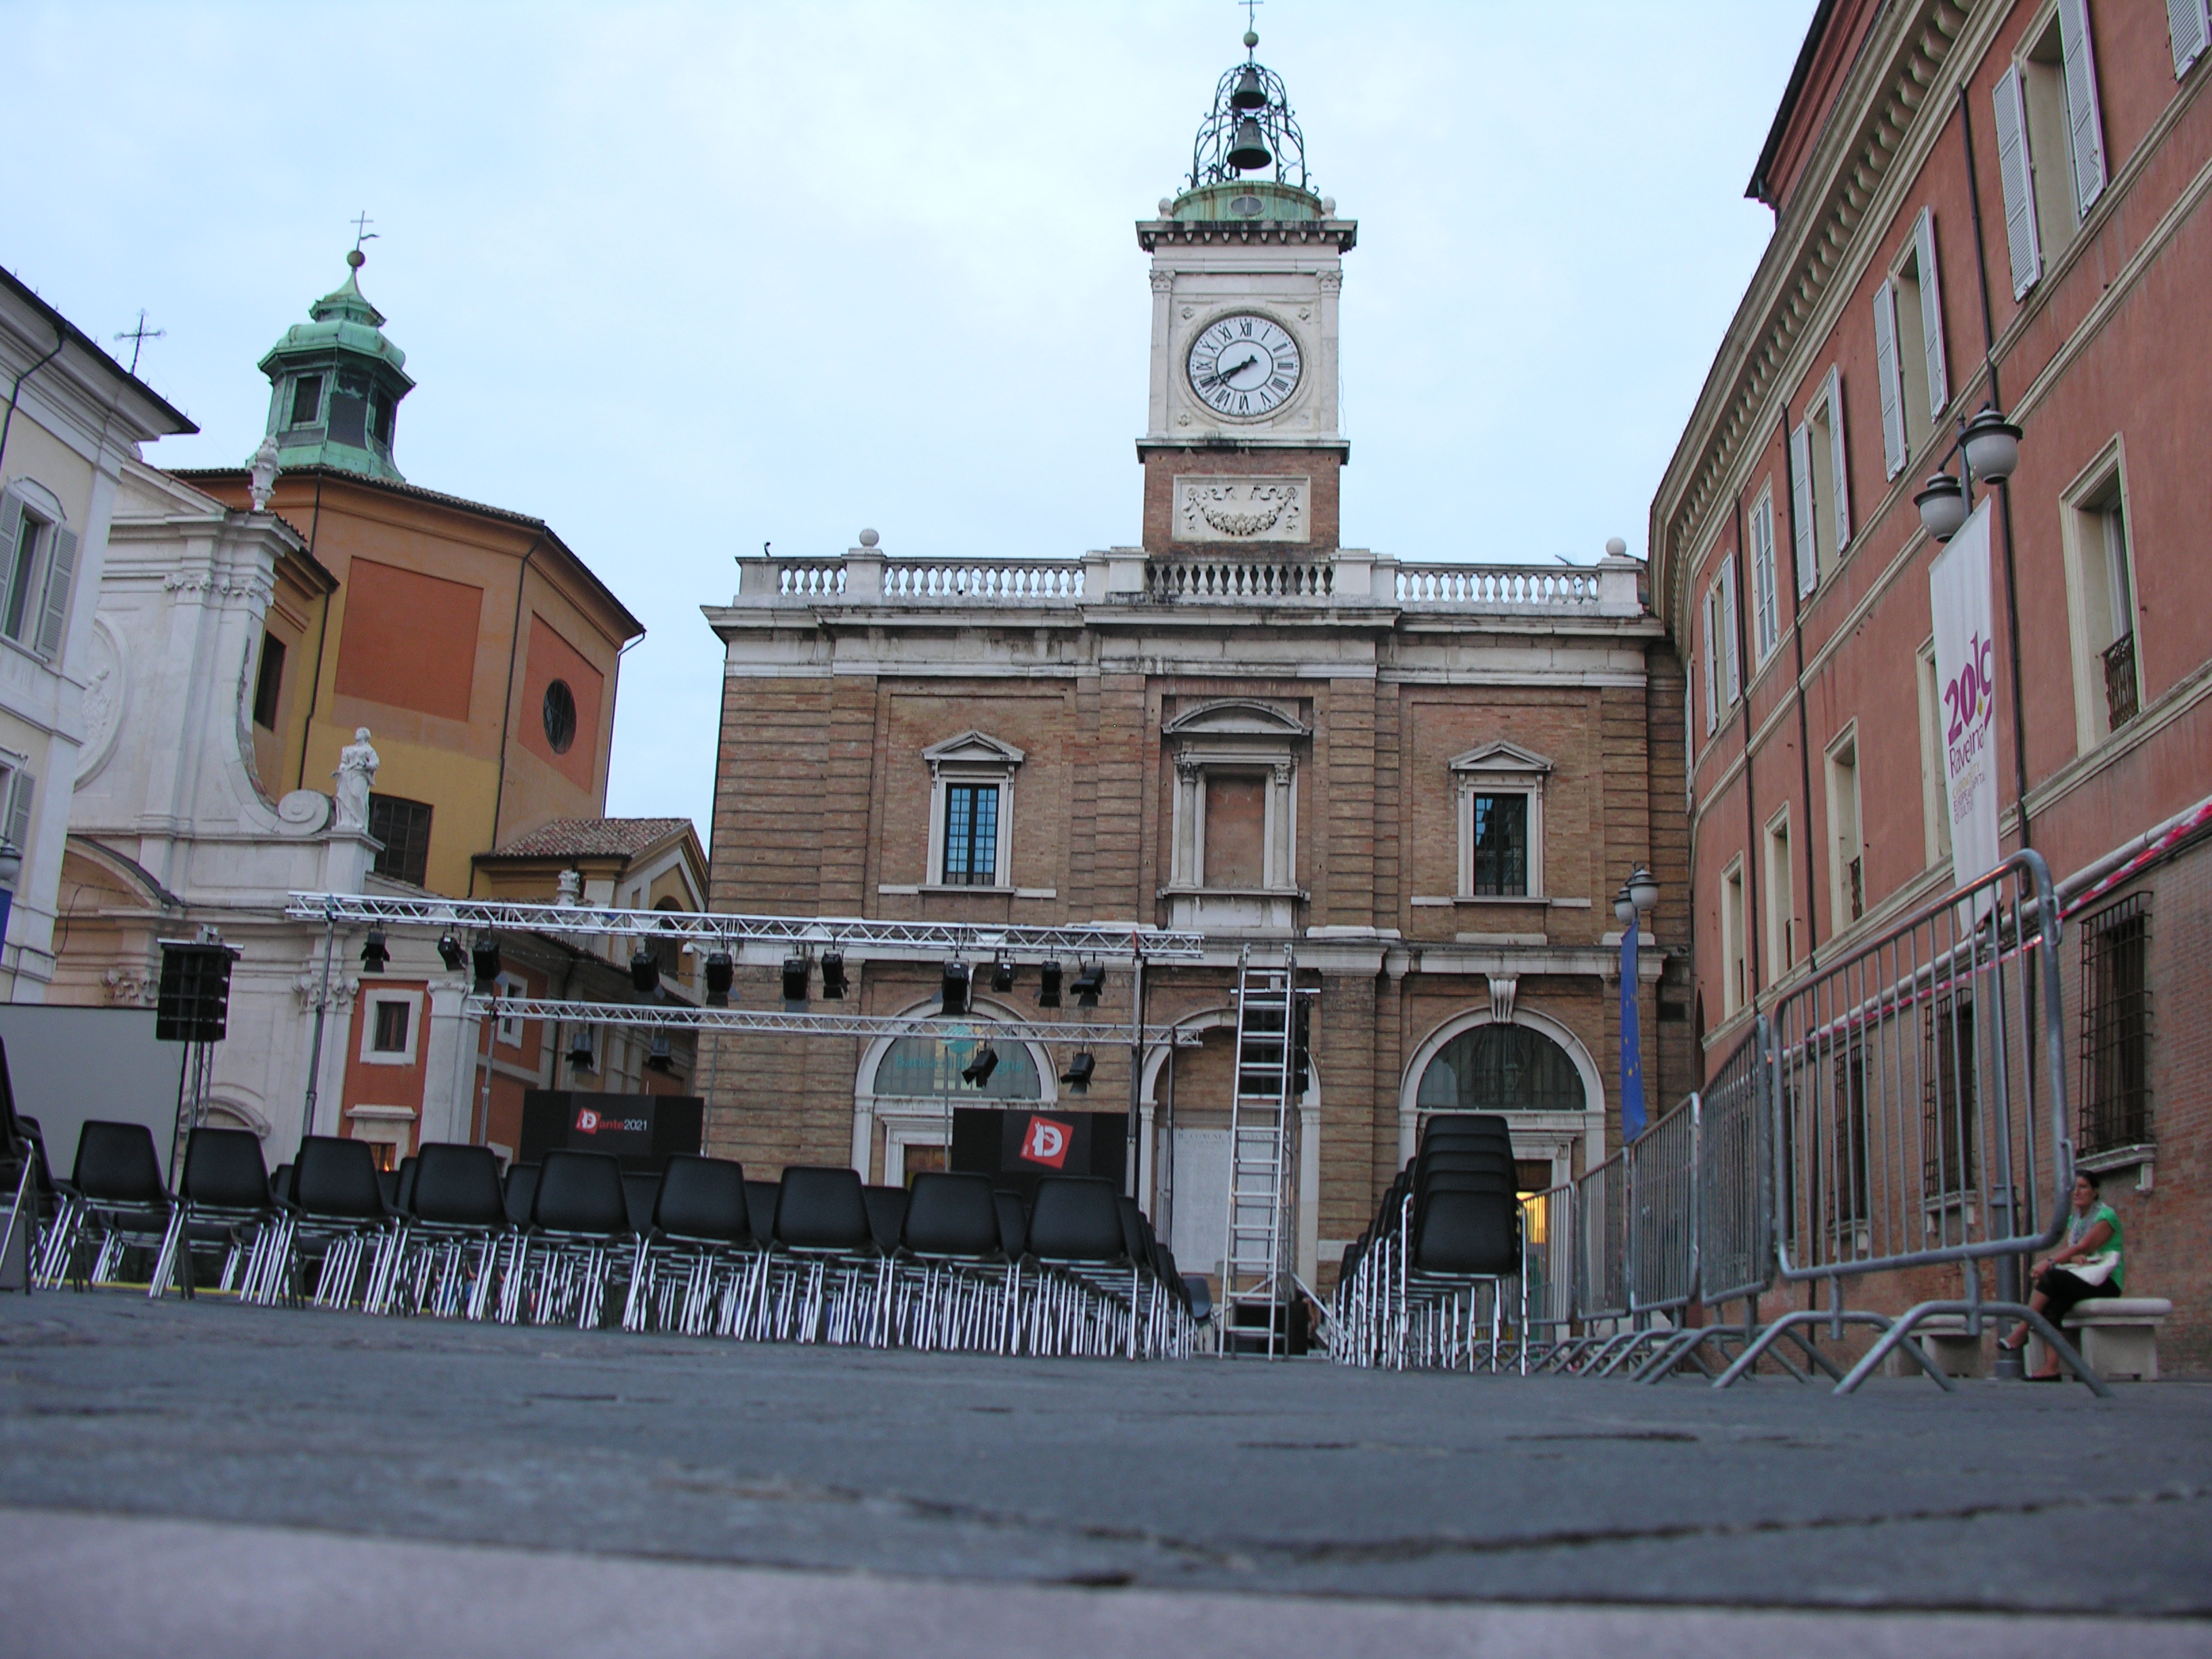 photo: https://upload.wikimedia.org/wikipedia/commons/2/28/Orologio_piazza_del_popolo.JPG